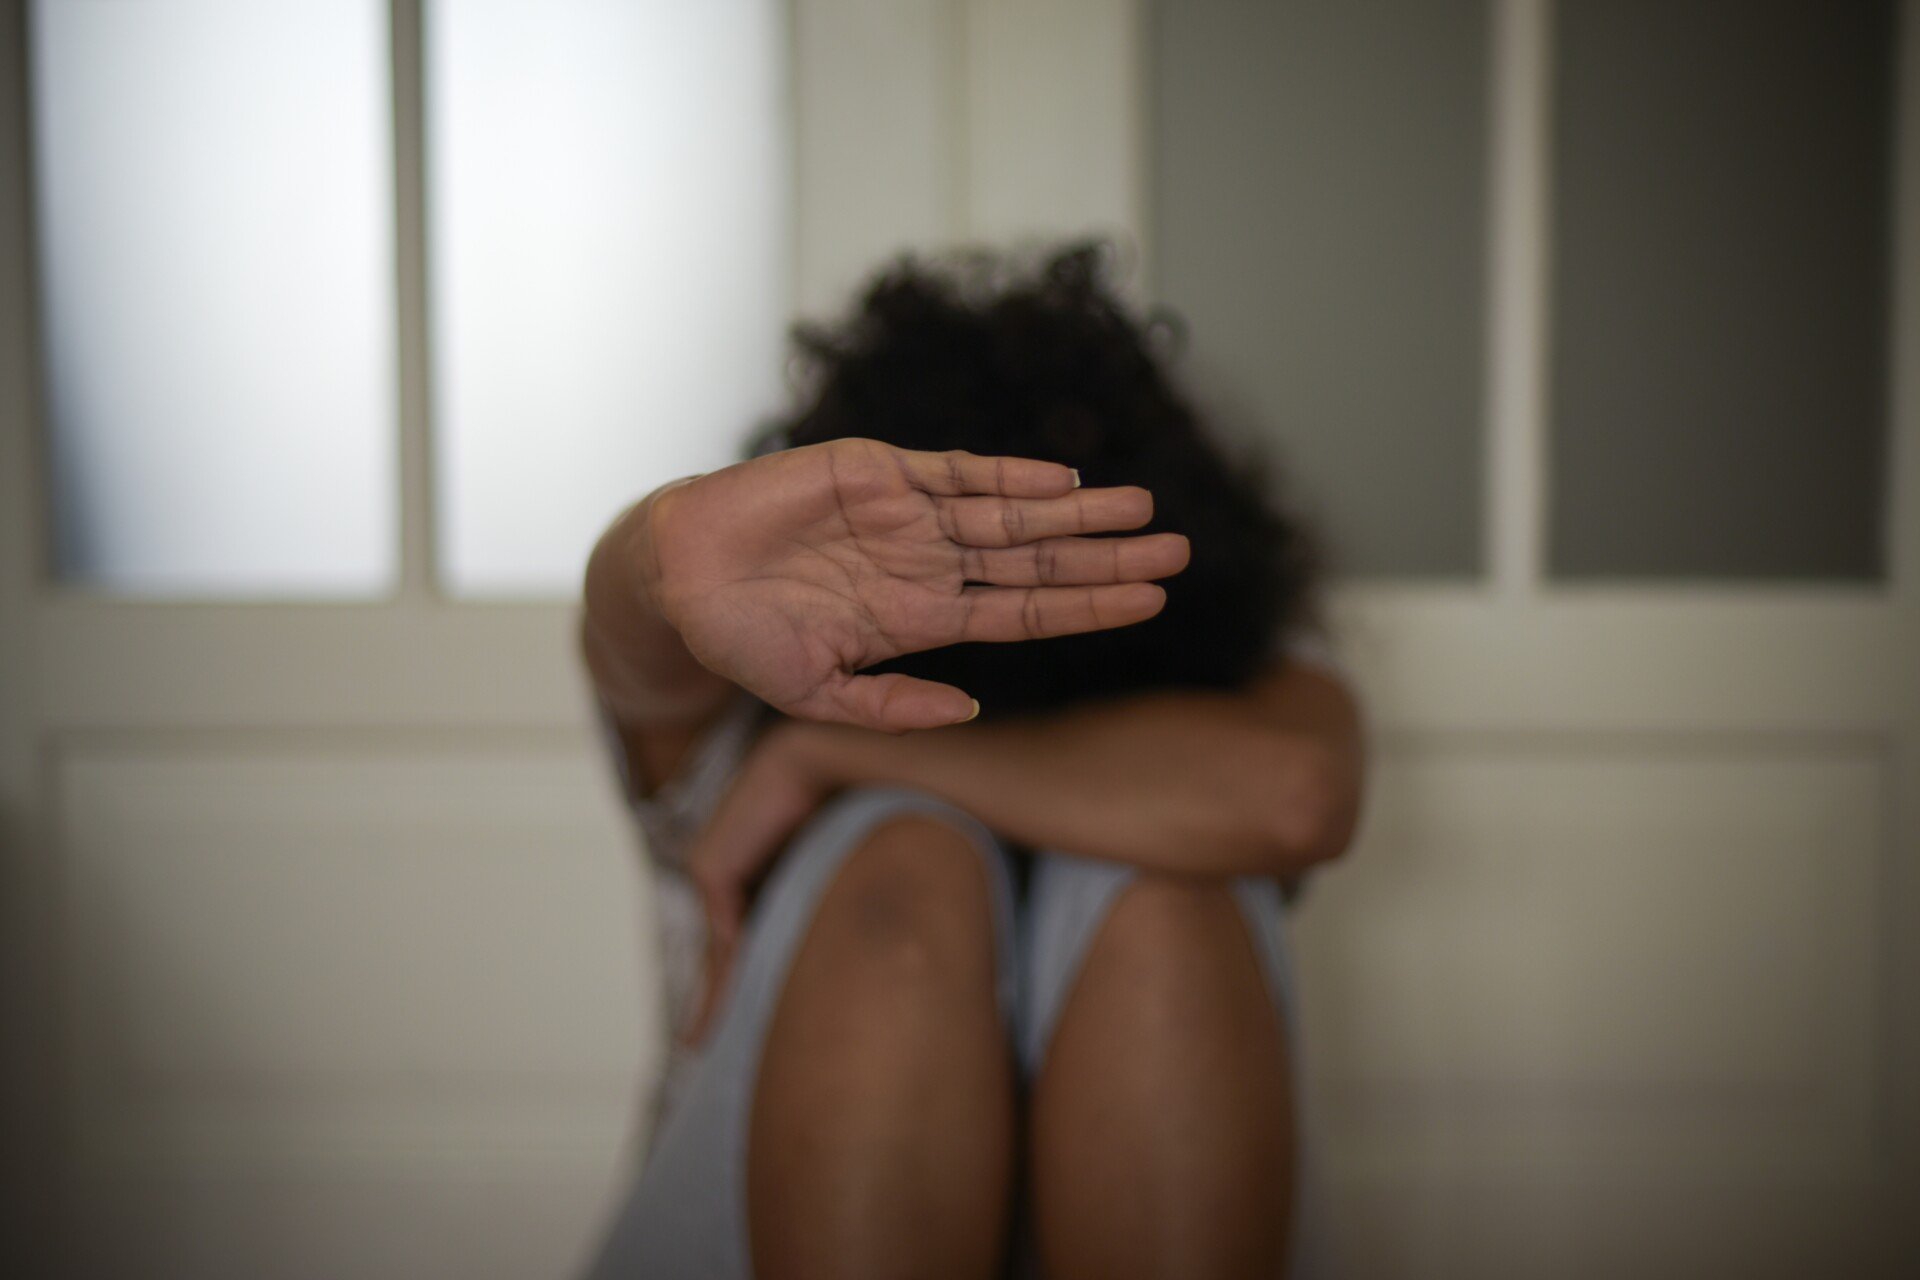 Ηράκλειο: Δύο συλλήψεις για ενδοοικογενειακή βία